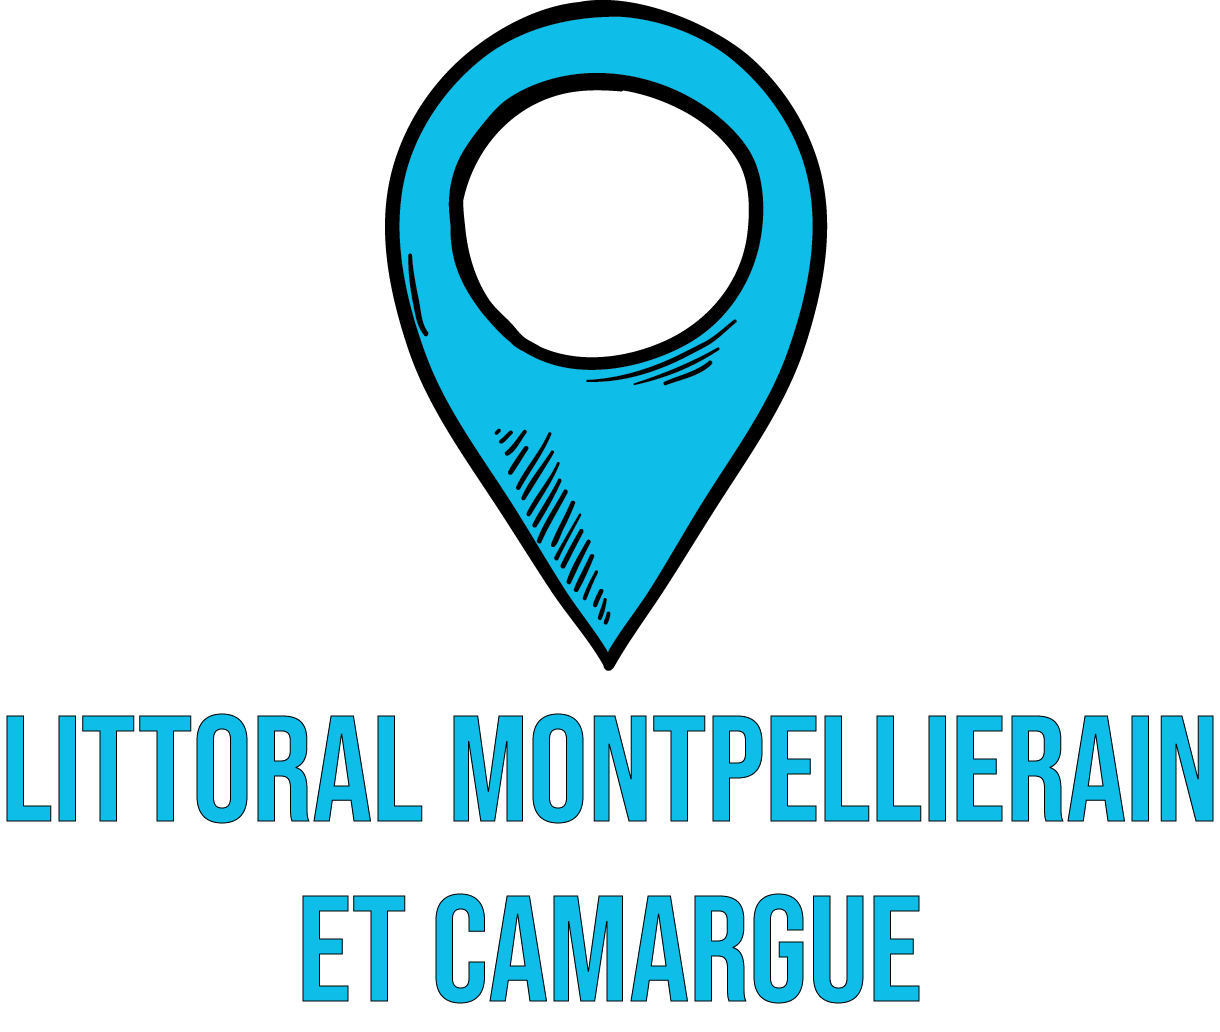 Littoral Montpellierain et Camargue